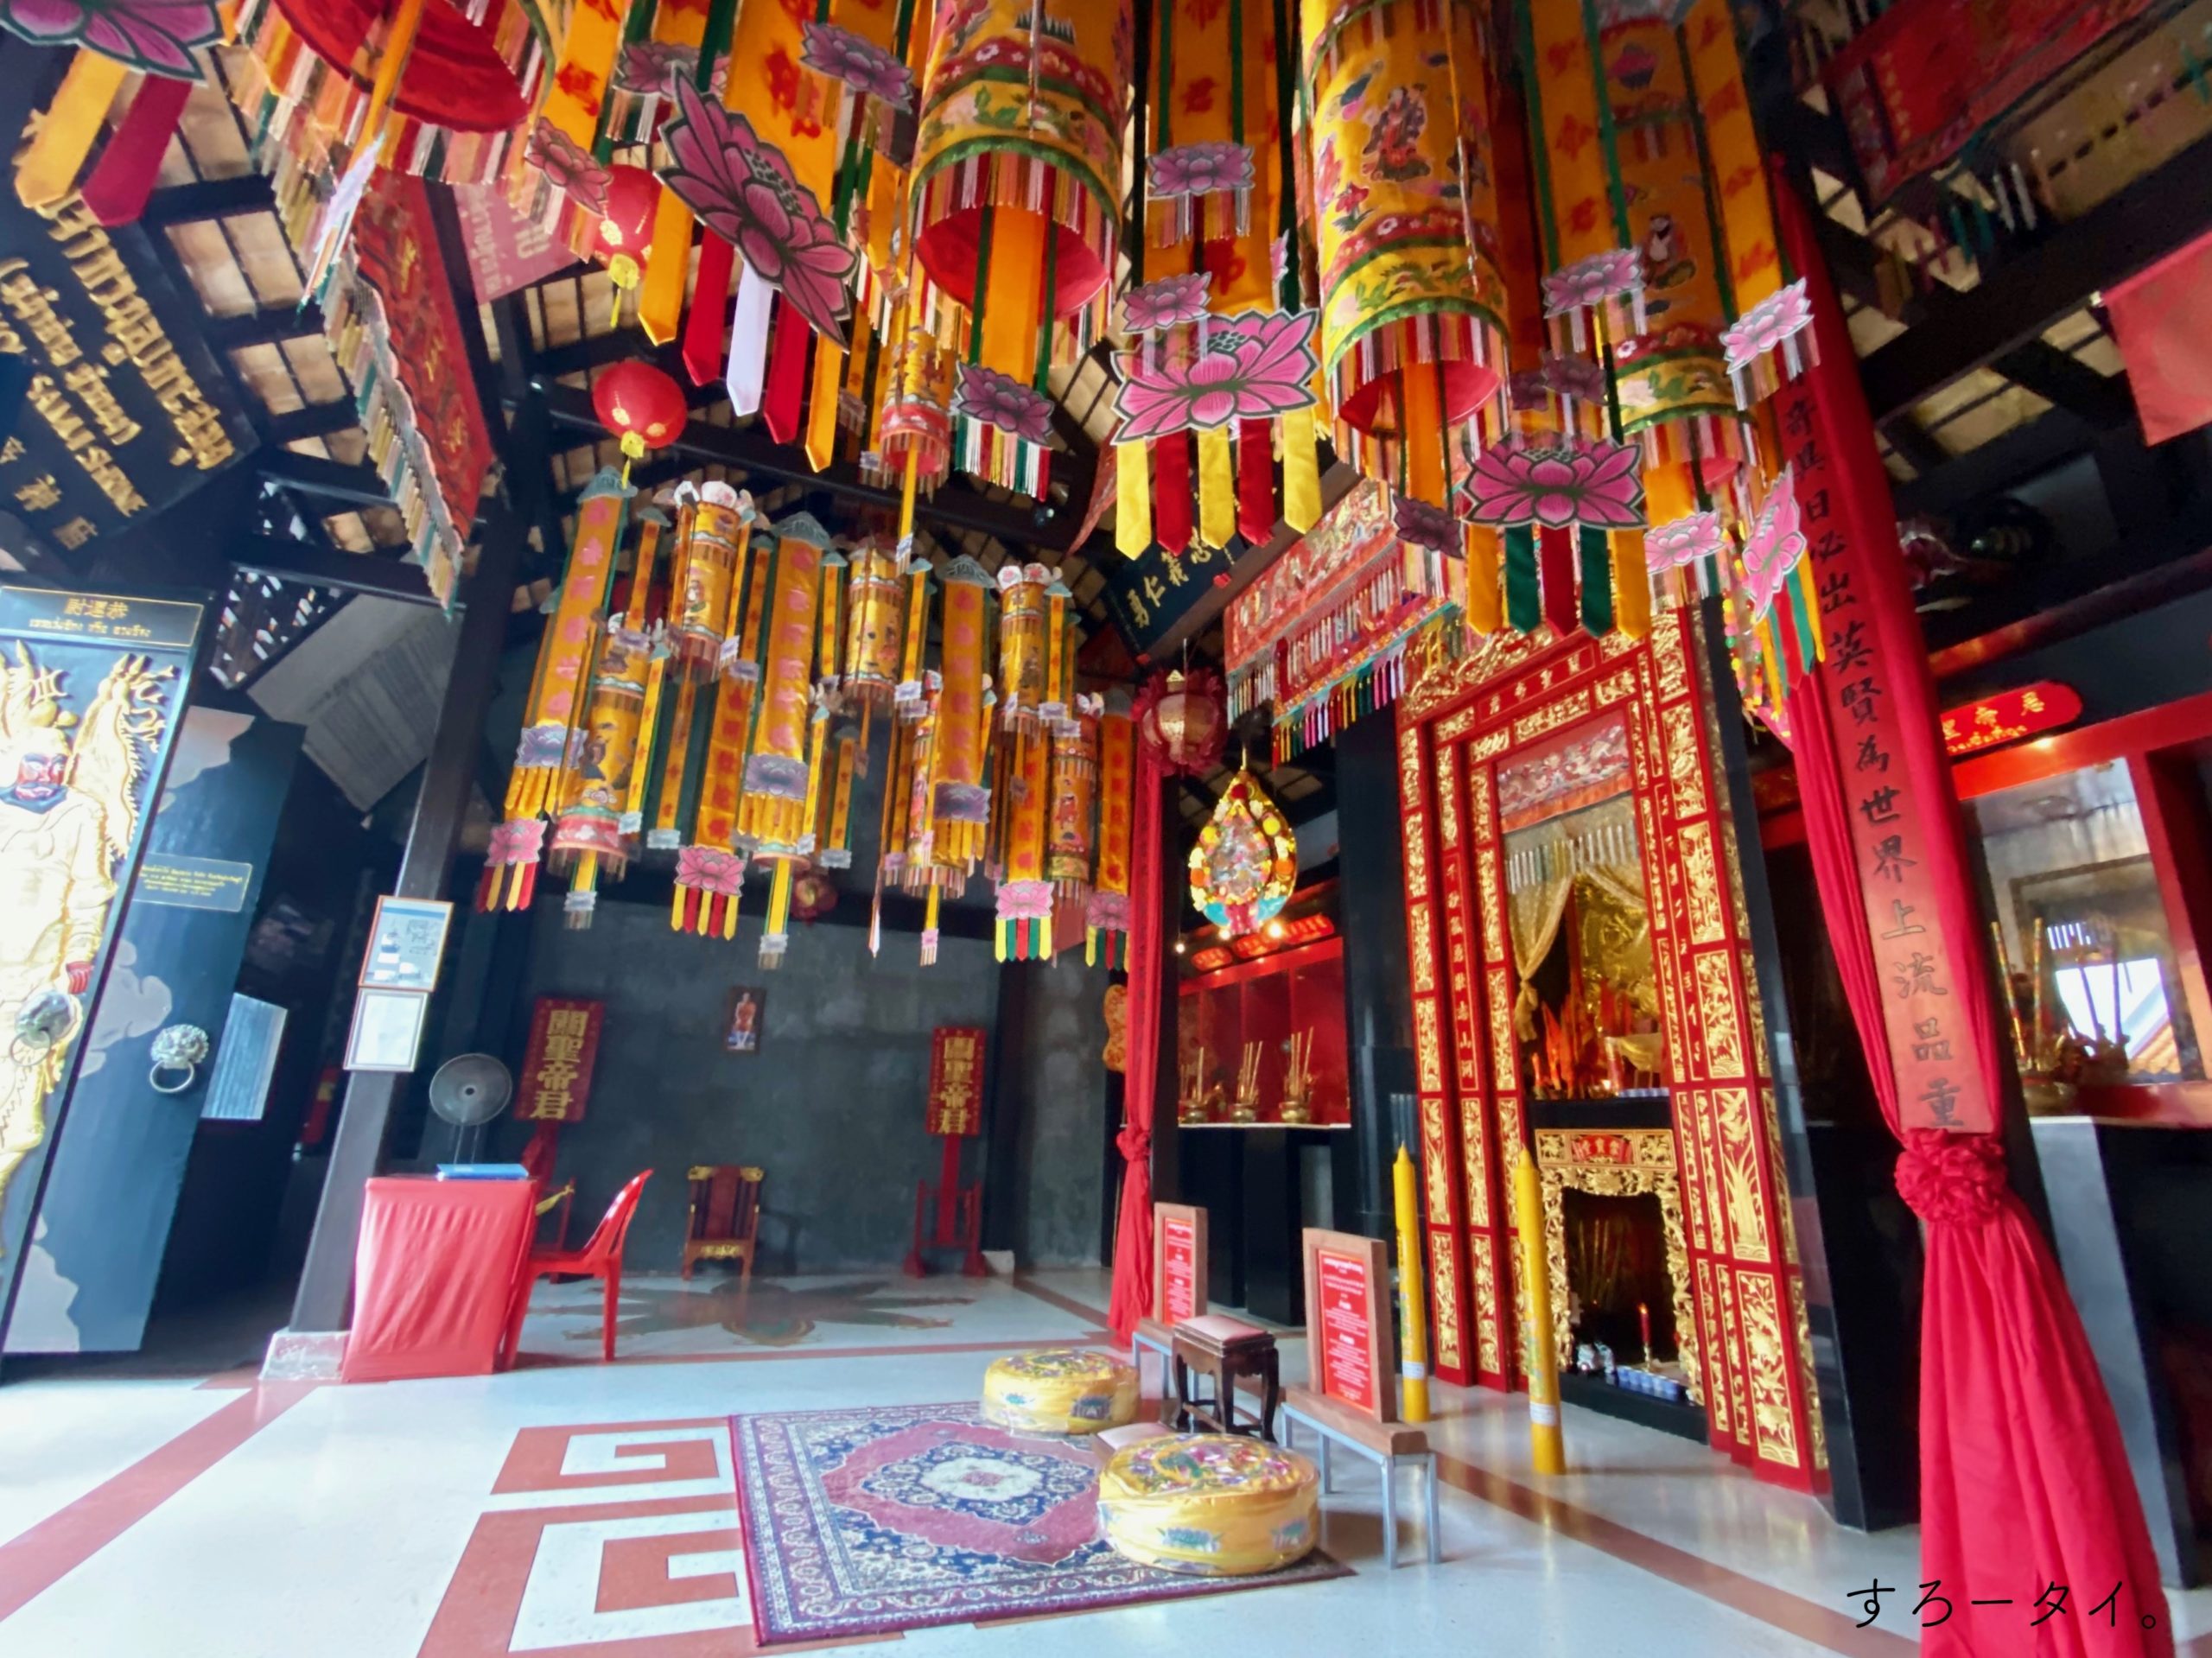 Guan Yu Koh Samui Shrine 関羽神社